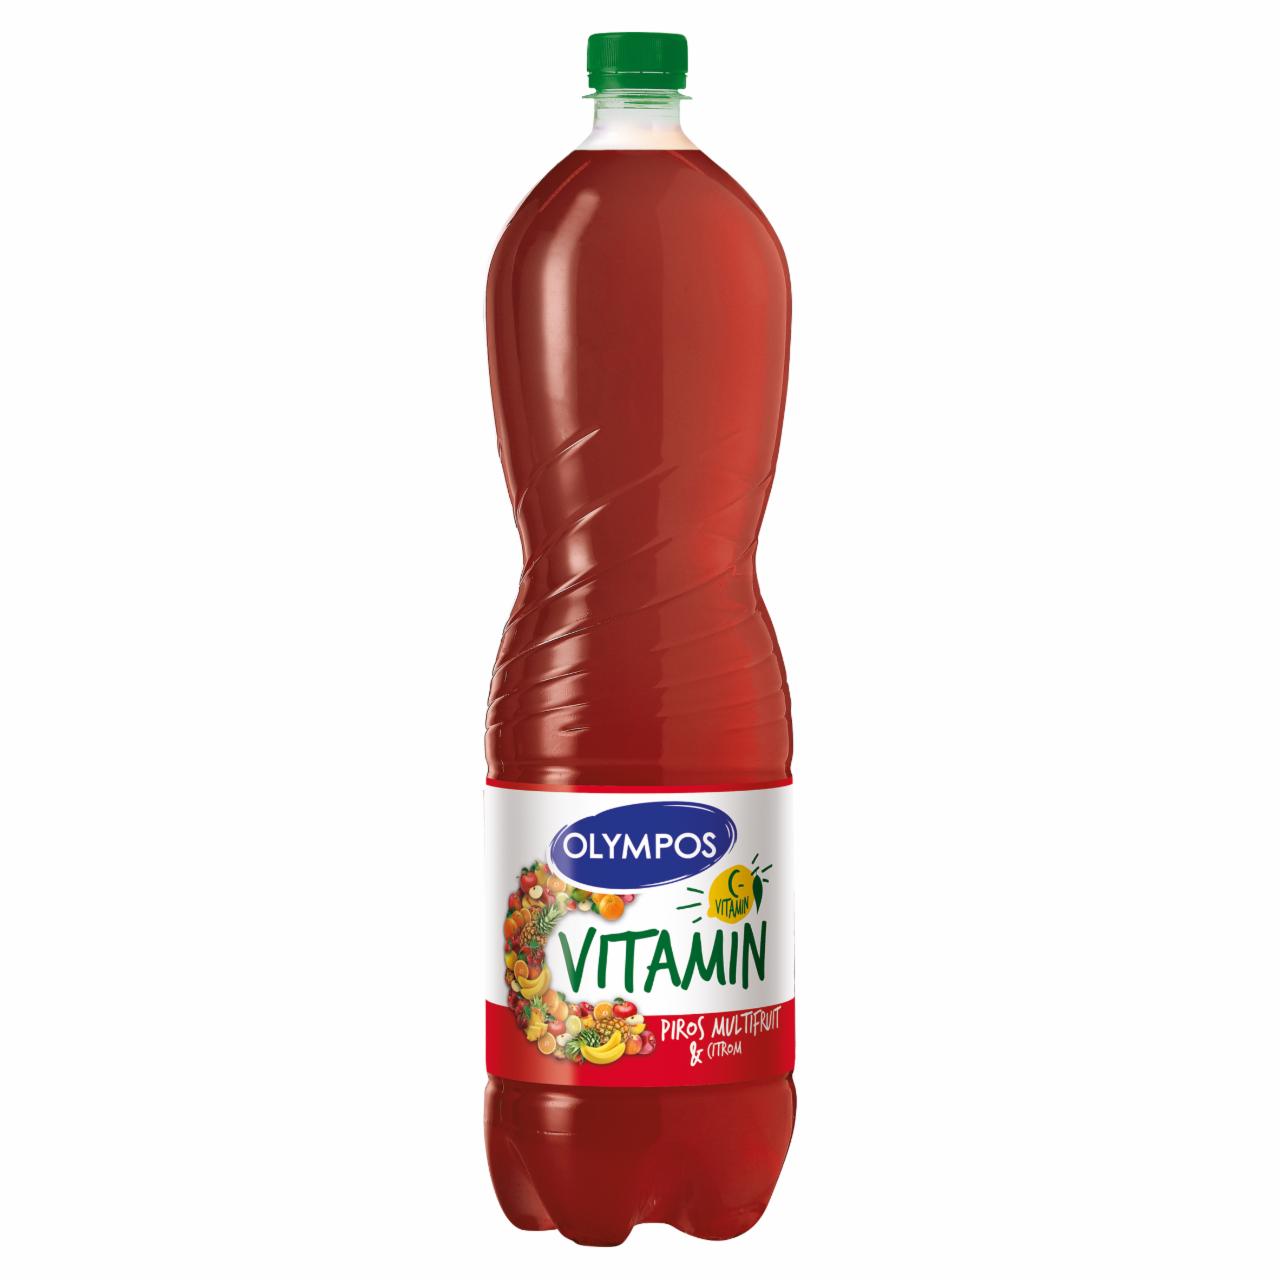 Képek - Olympos C vitamin Piros Multifruit vegyes gyümölcsital cukorral és édesítőszerekkel 1,5 l